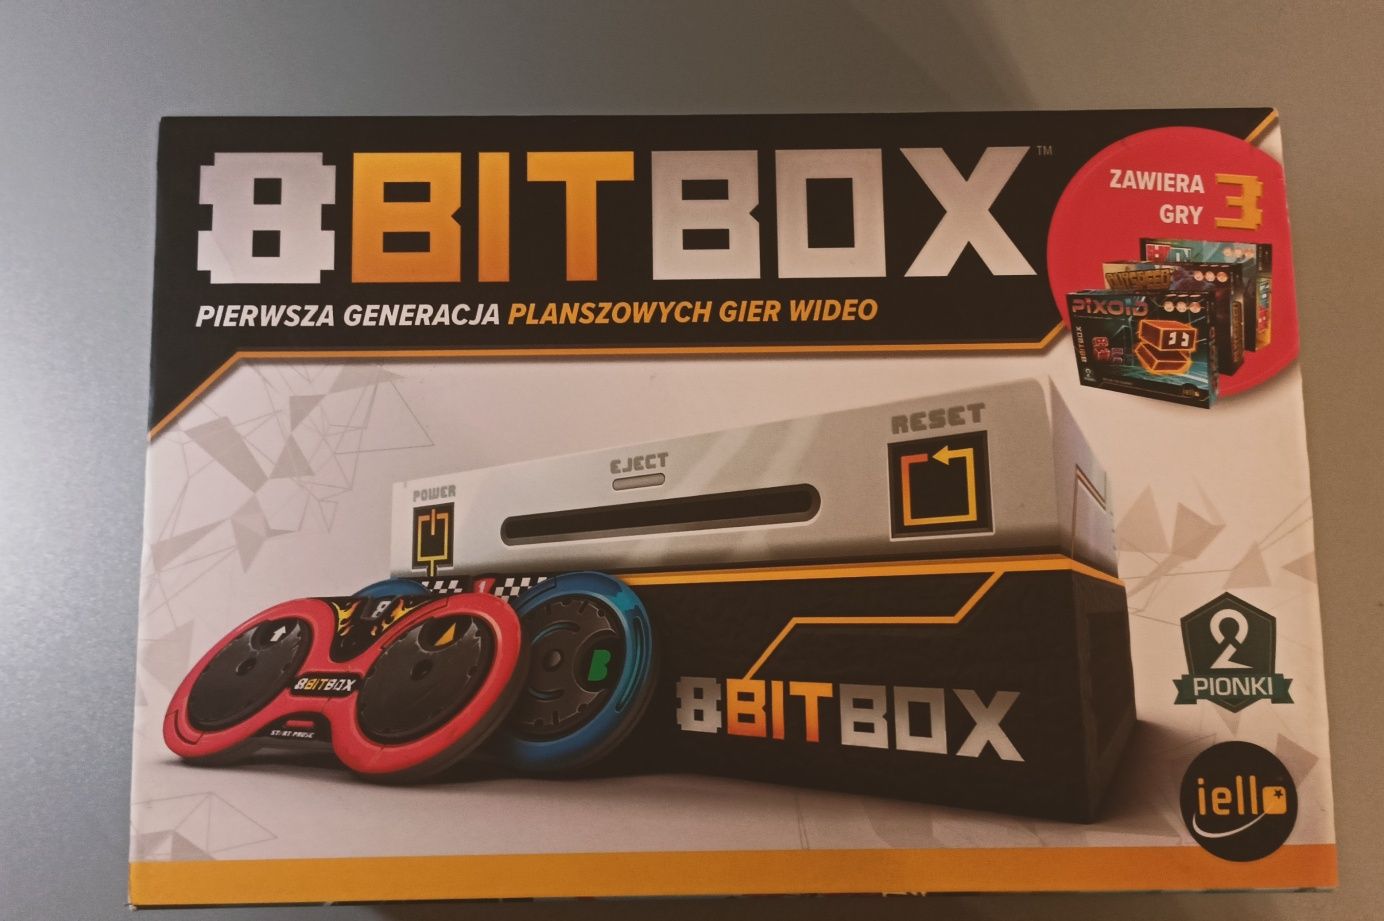 8bit box gra planszowa